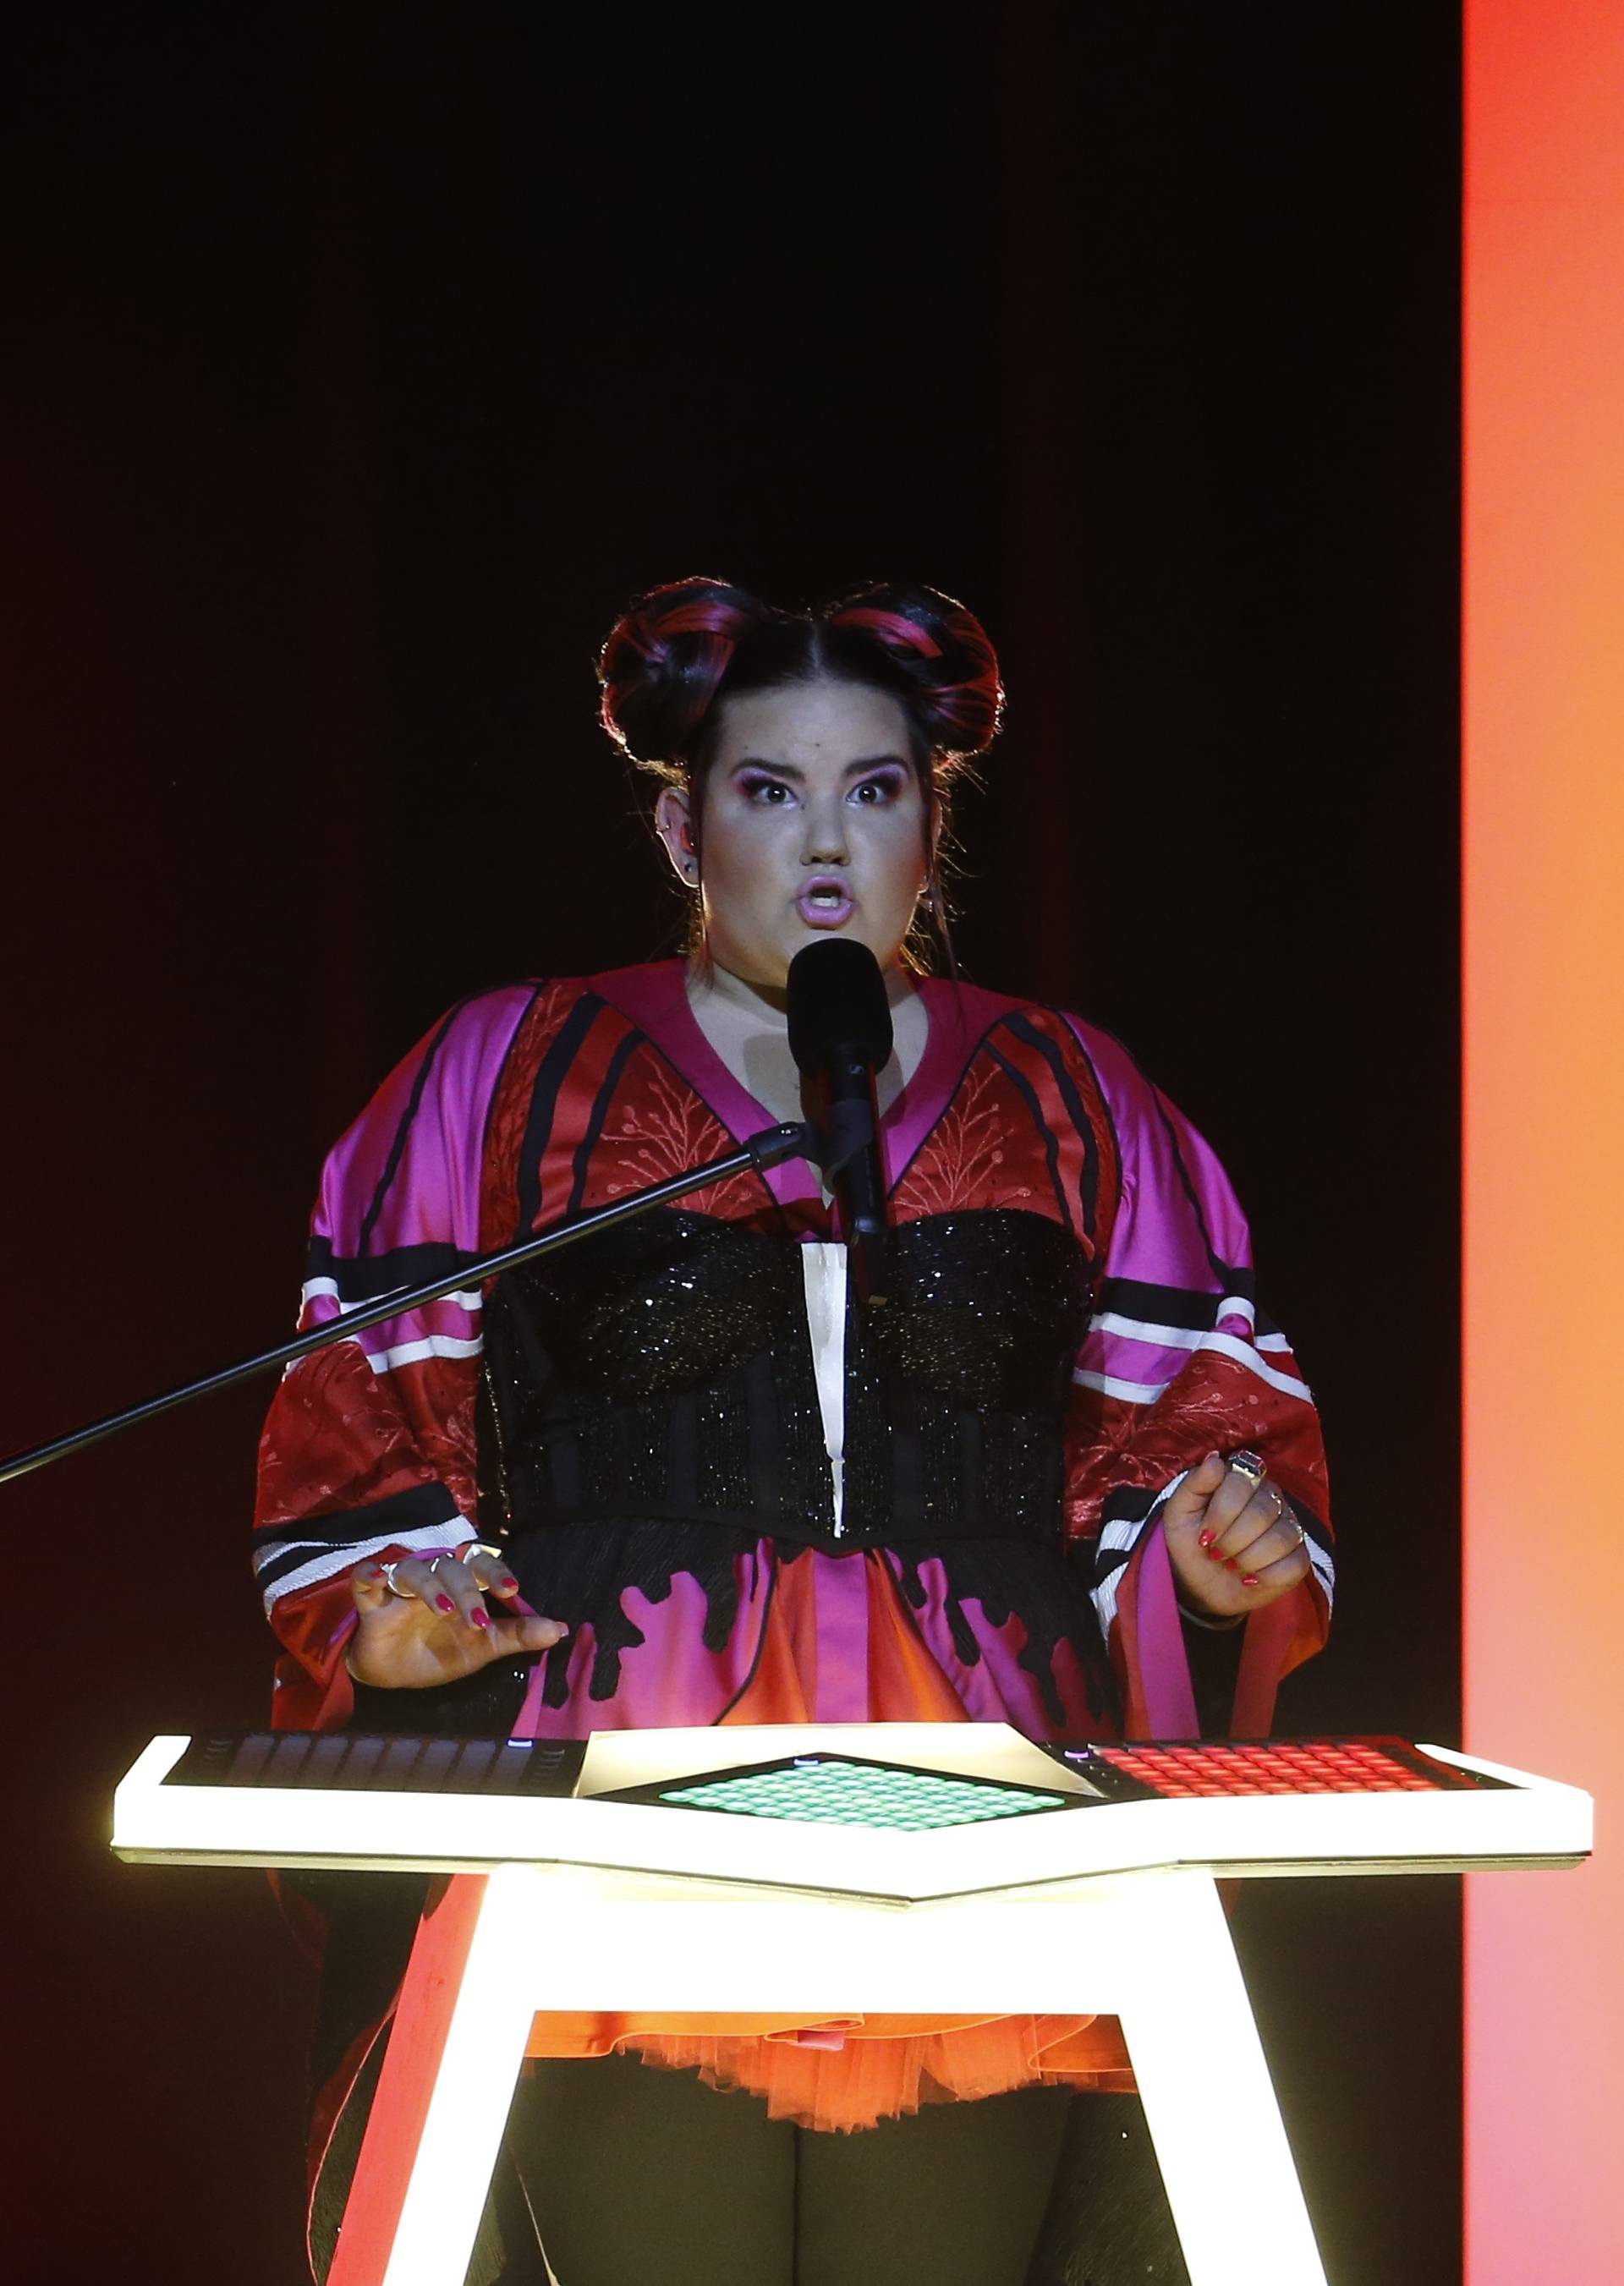 Israelâs Netta performs âToyâ during the Semi-Final 1 for Eurovision Song Contest 2018 in Lisbon